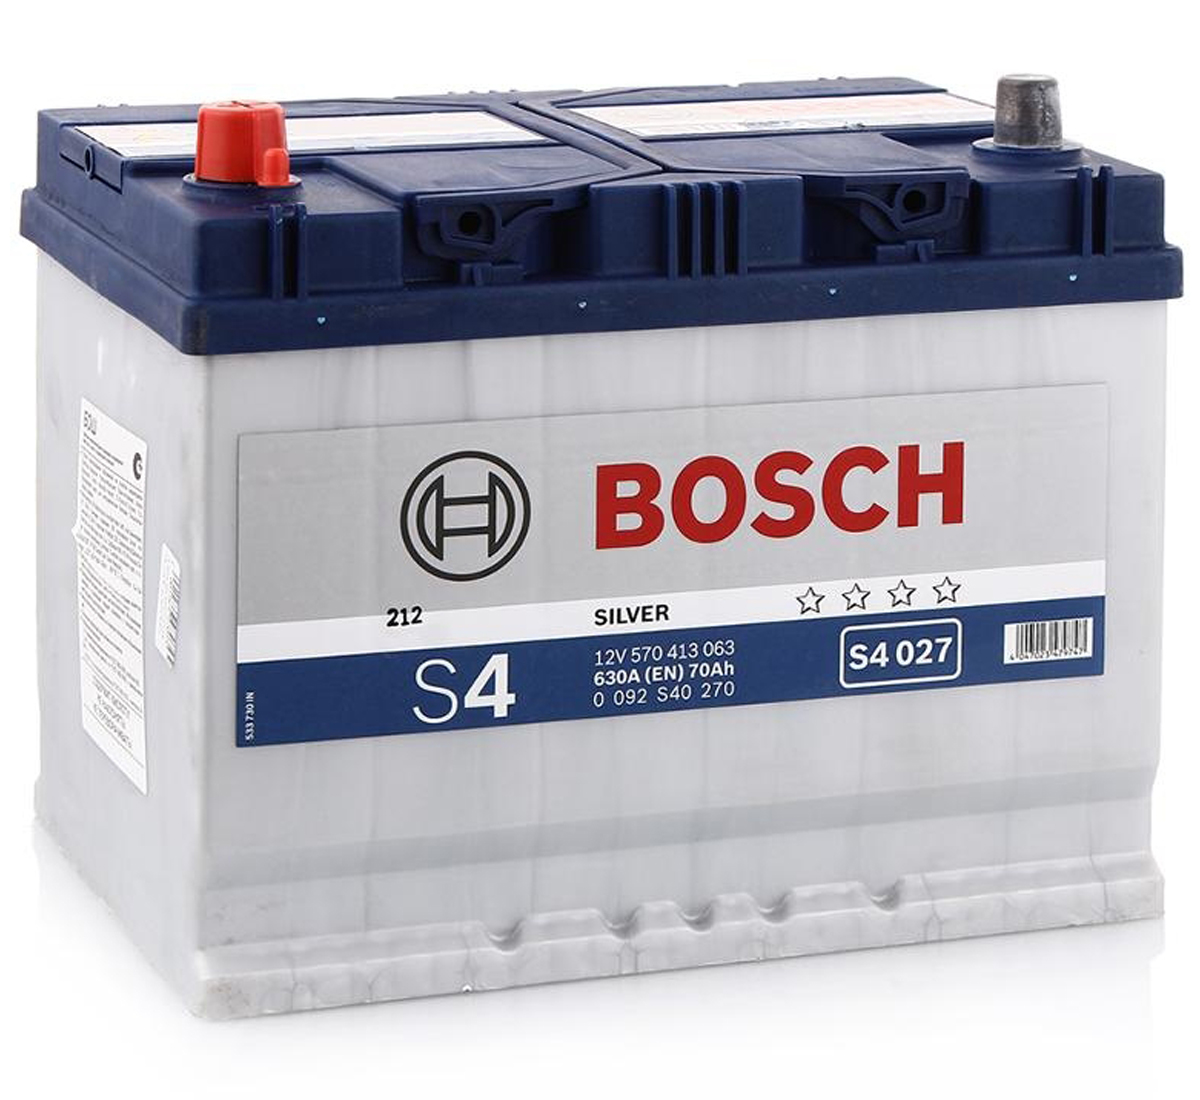 Аккумулятор Bosch 60ah. Аккумулятор Bosch s4 Asia 70 а/ч 630 а прямая (l+; 1; Rus) 260x175x220. Автомобильный аккумулятор Bosch s4 028. Аккумулятор Bosch 0 092 s40 270 630a 70r.